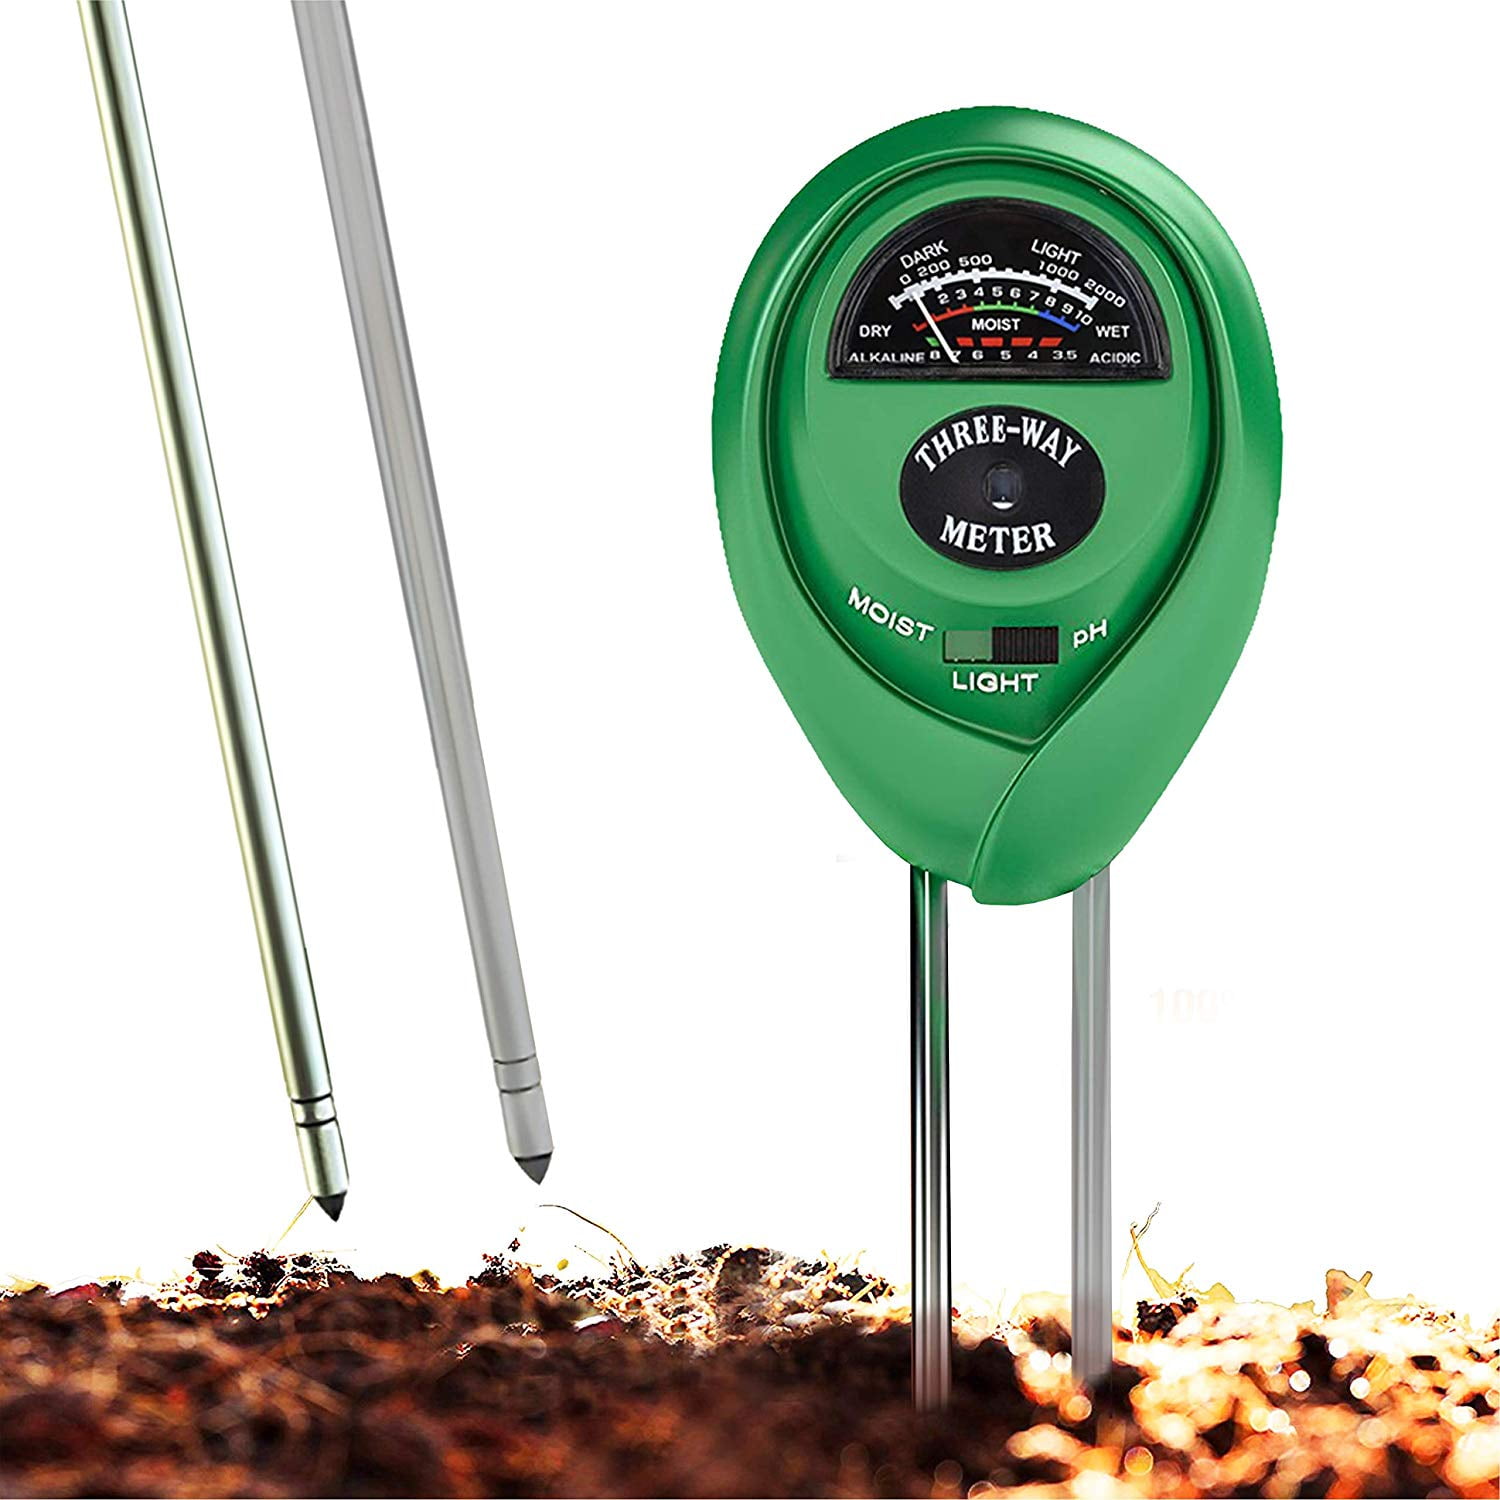 Aatraay Soil Meter, 3-in-1 Digital Plant Soil Moisture Meter, Soil Tester  Moisture Meter Humidity Monitor Light PH Detector with Probe Soil Test Kit  for Garden - Yahoo Shopping